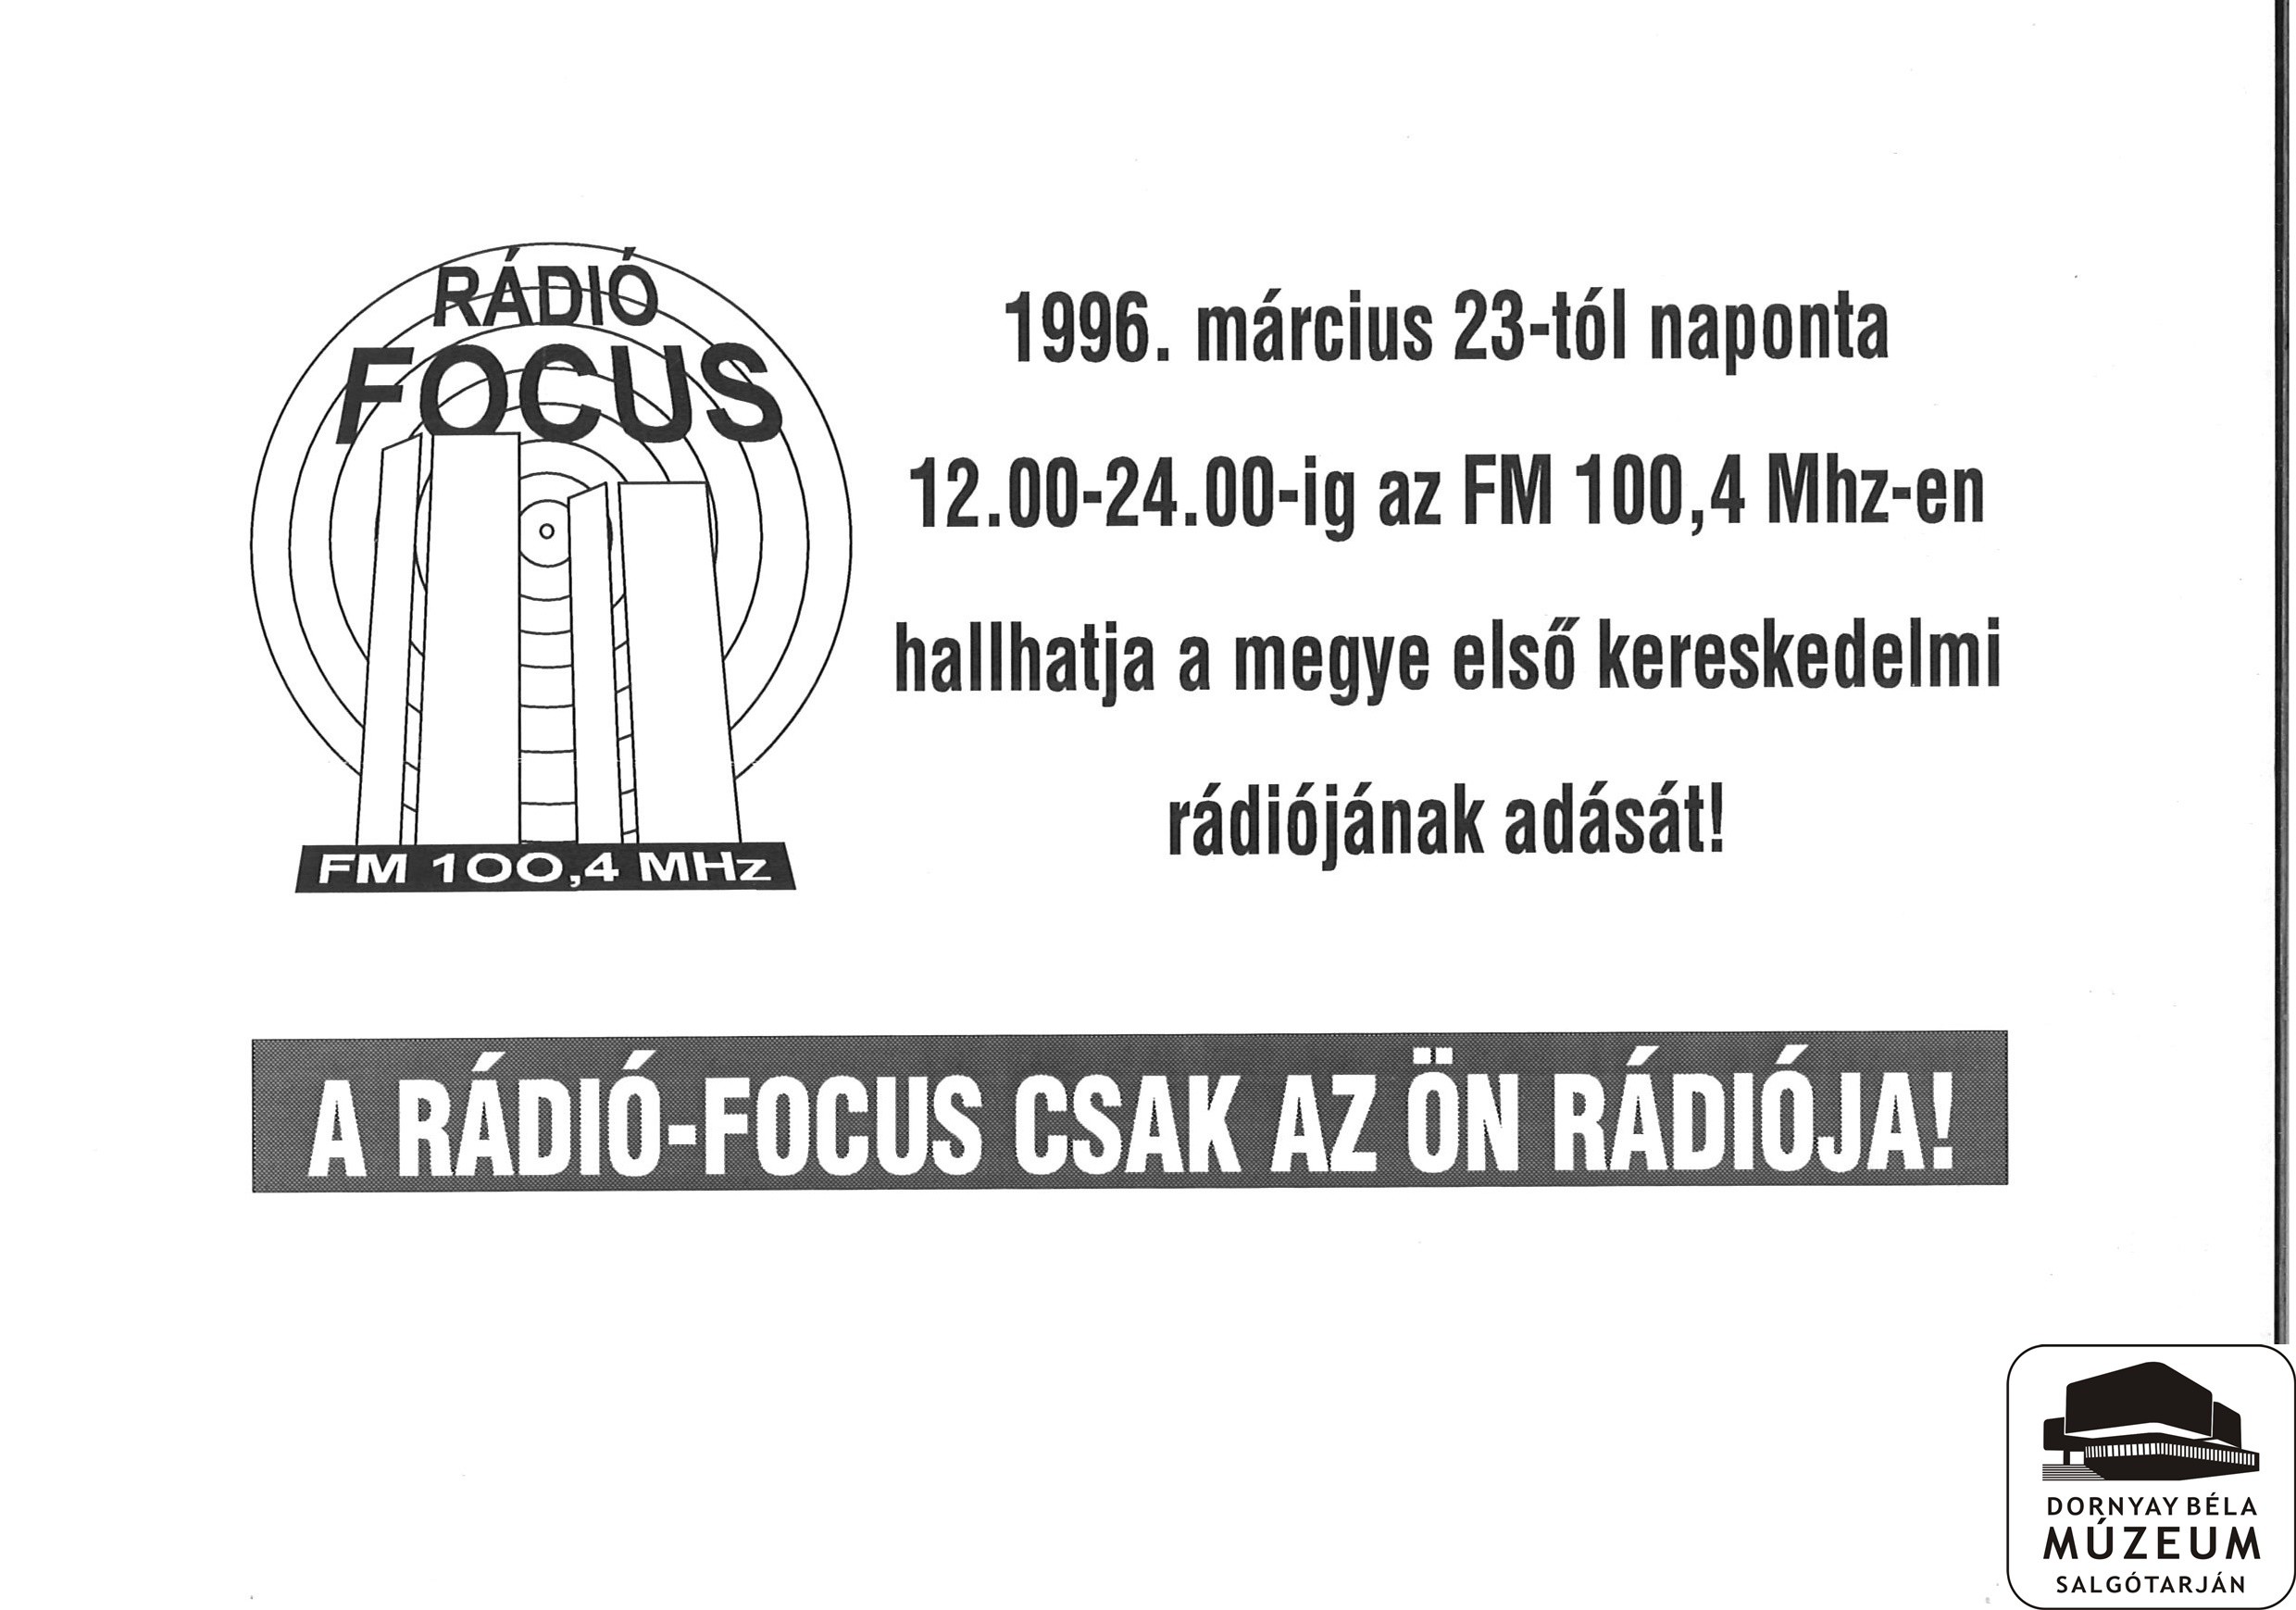 Focus rádió műsorának indulása (Dornyay Béla Múzeum, Salgótarján CC BY-NC-SA)